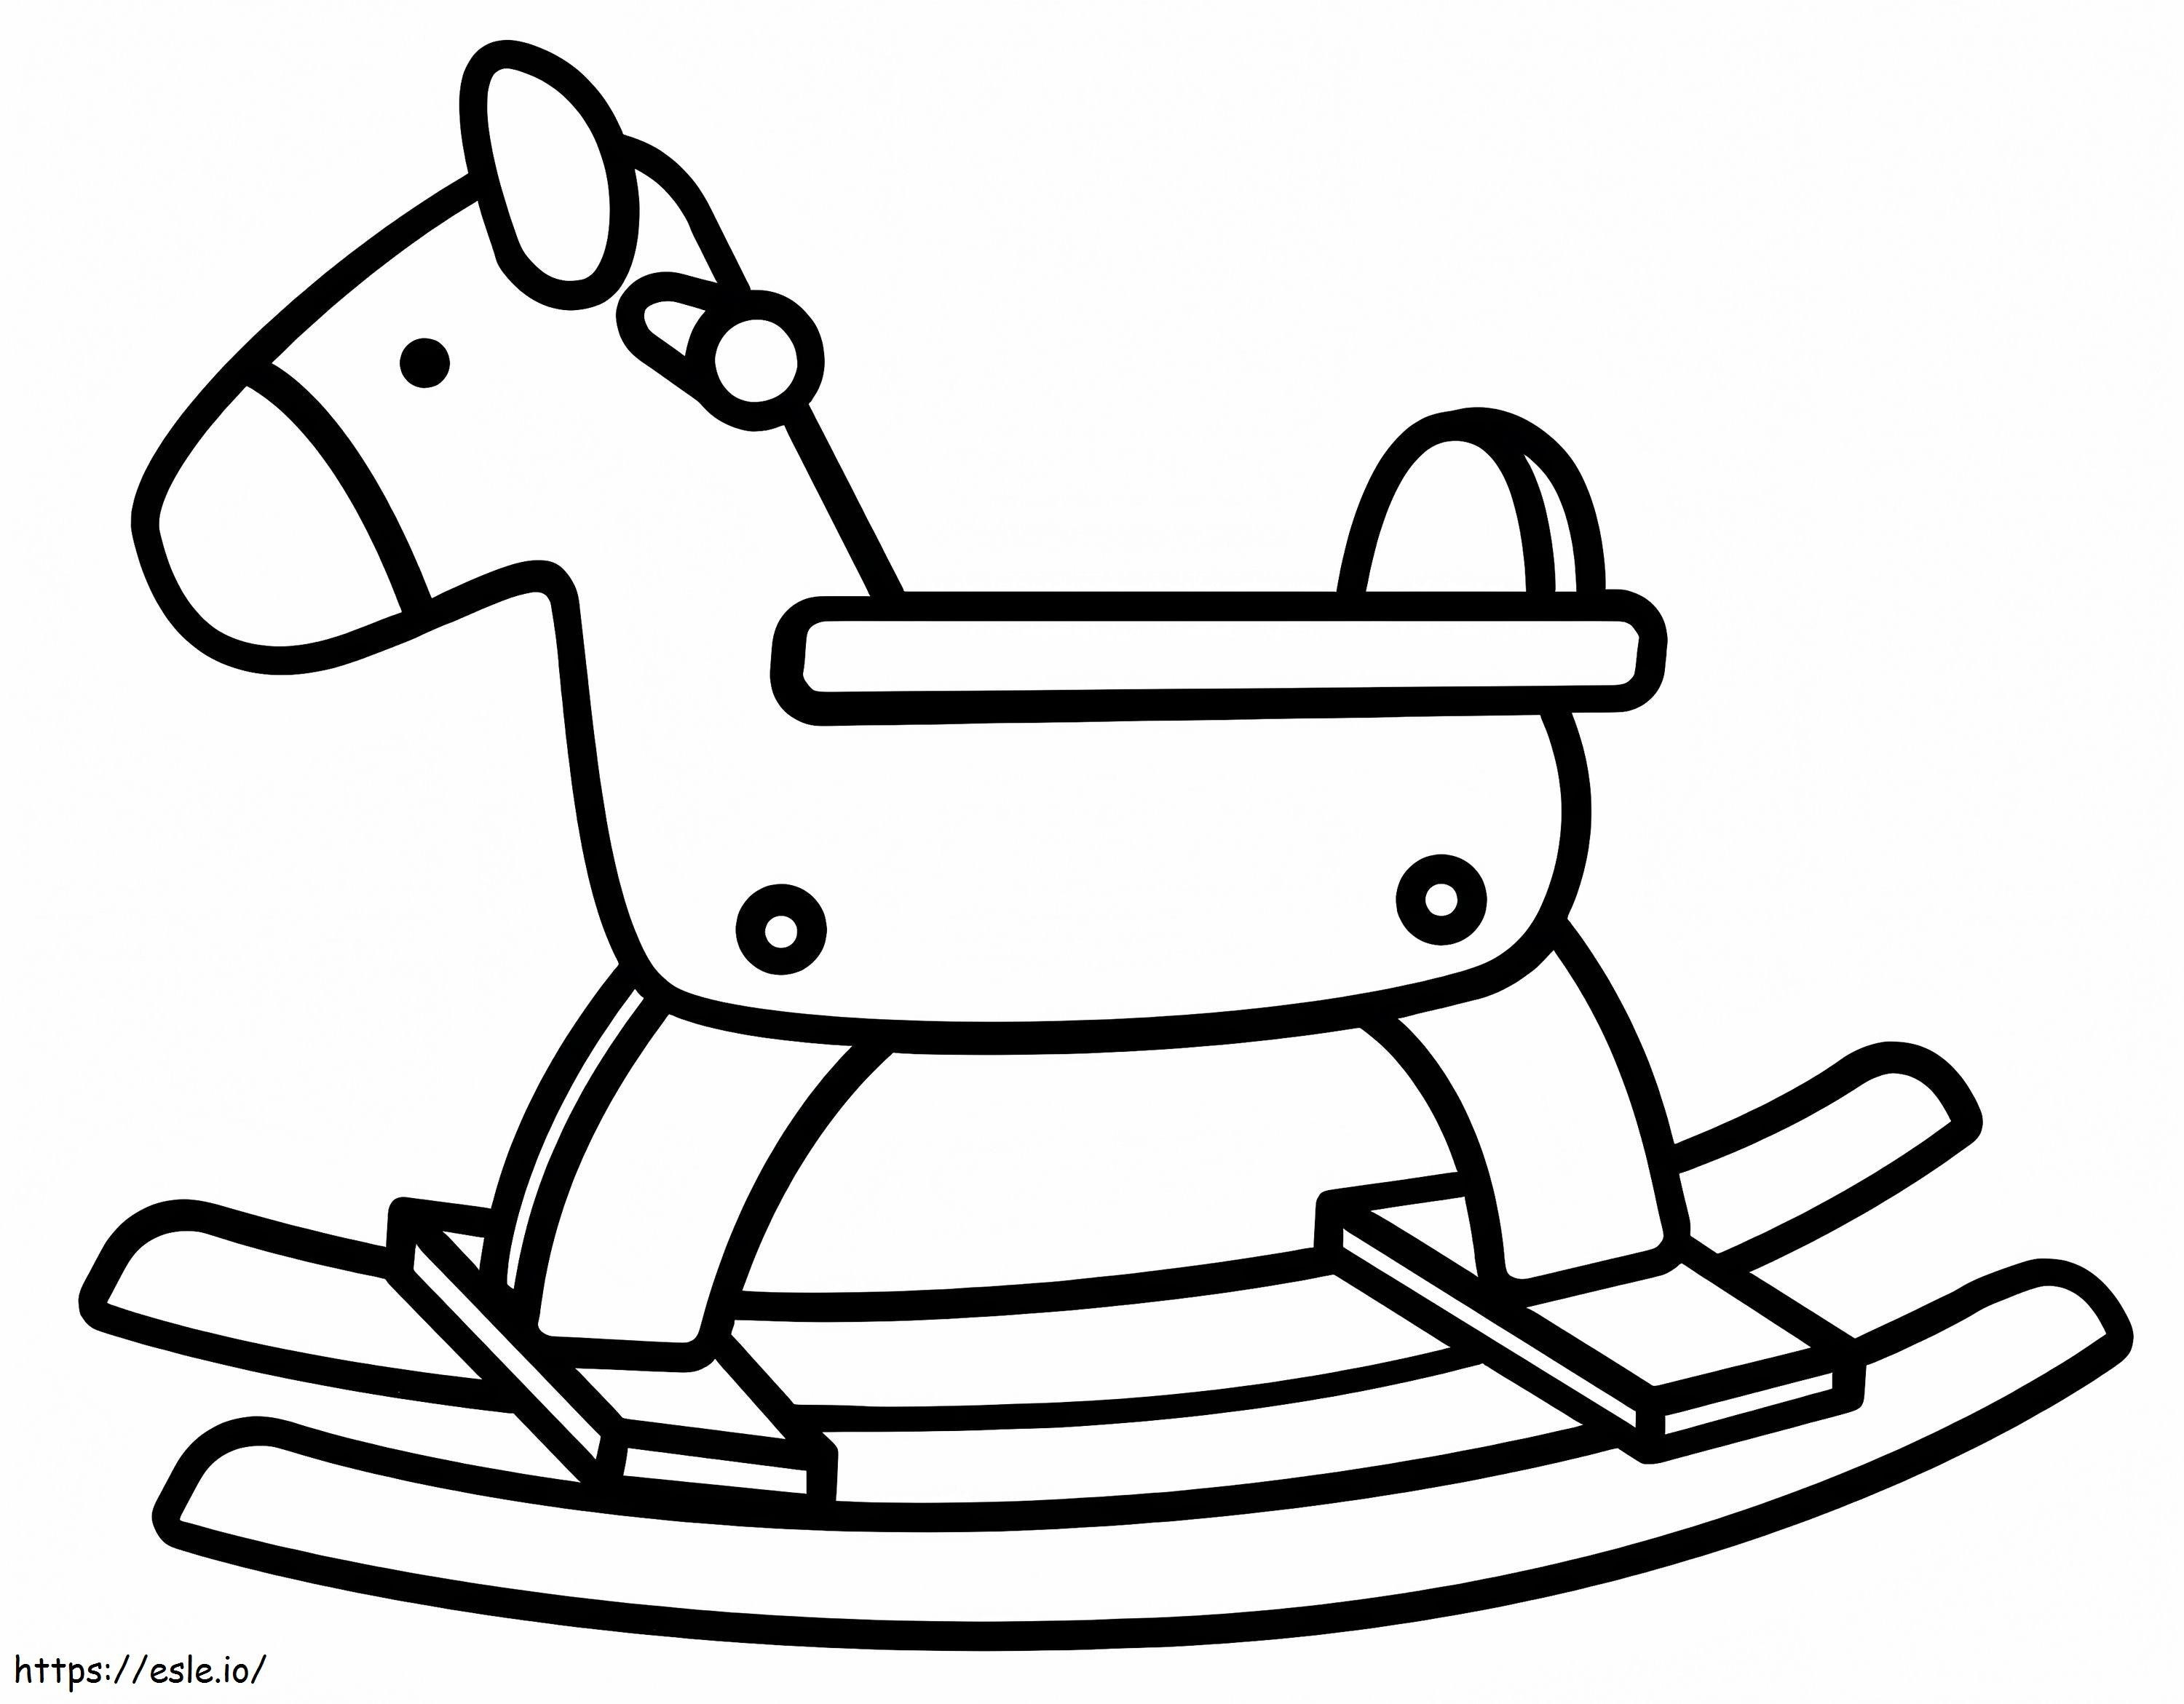 Koń na biegunach do bezpłatnego wydruku kolorowanka